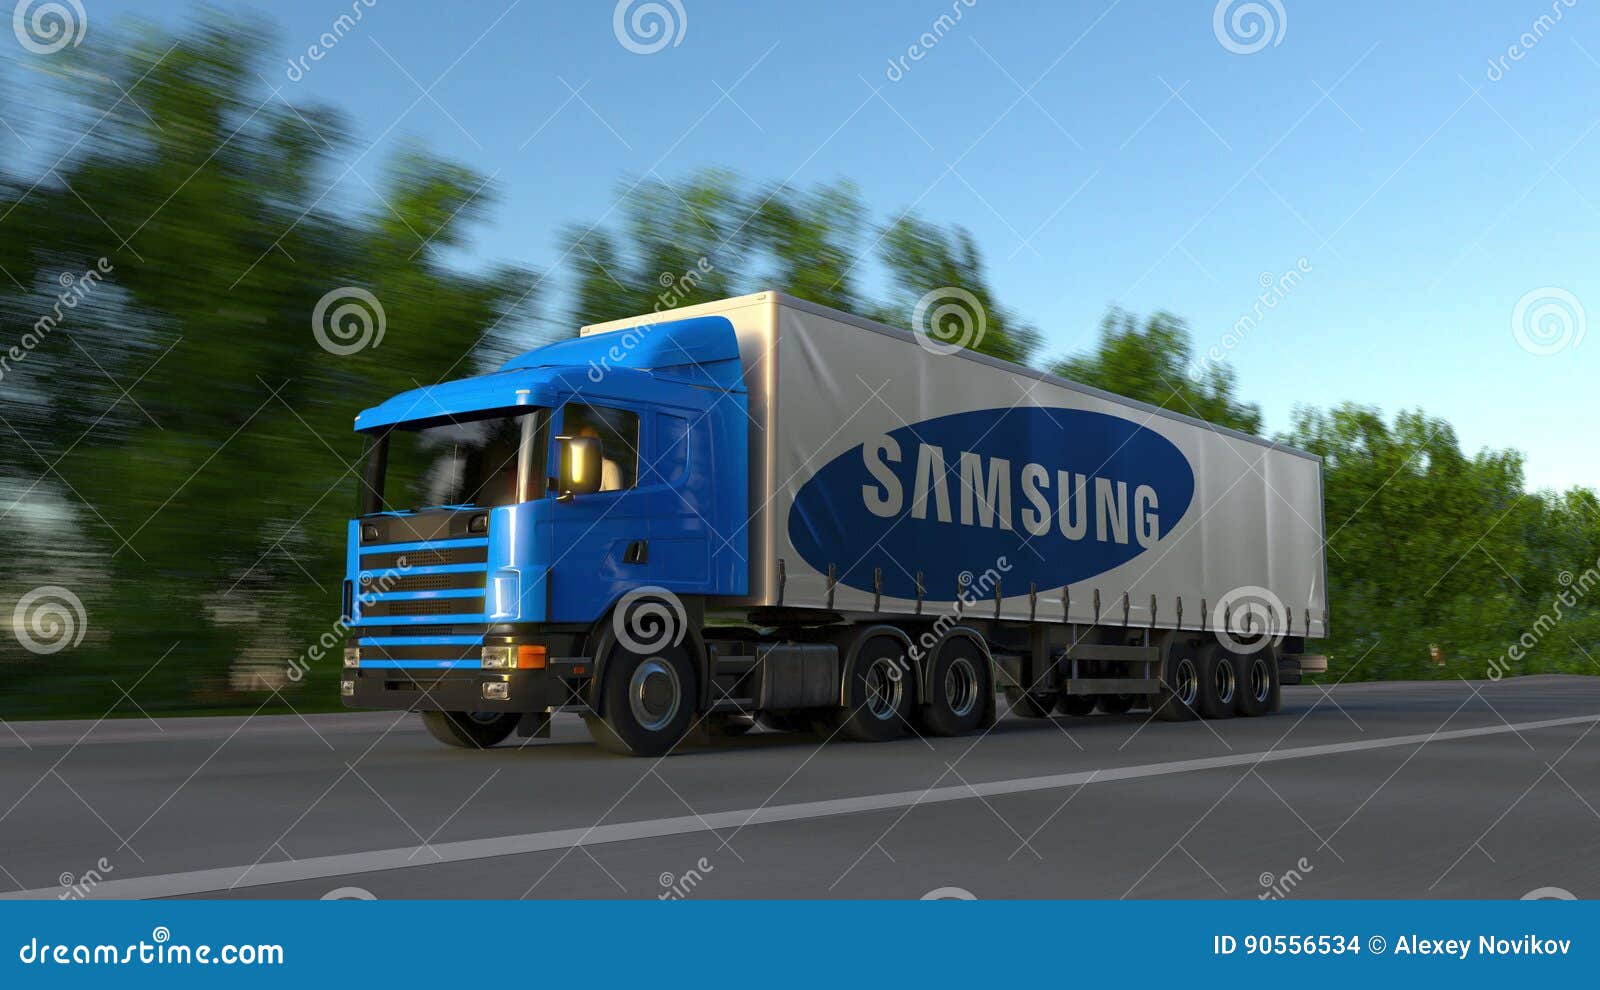 Caminhão transparente da Samsung. #caminhao #caminhoneiro #samsung #a